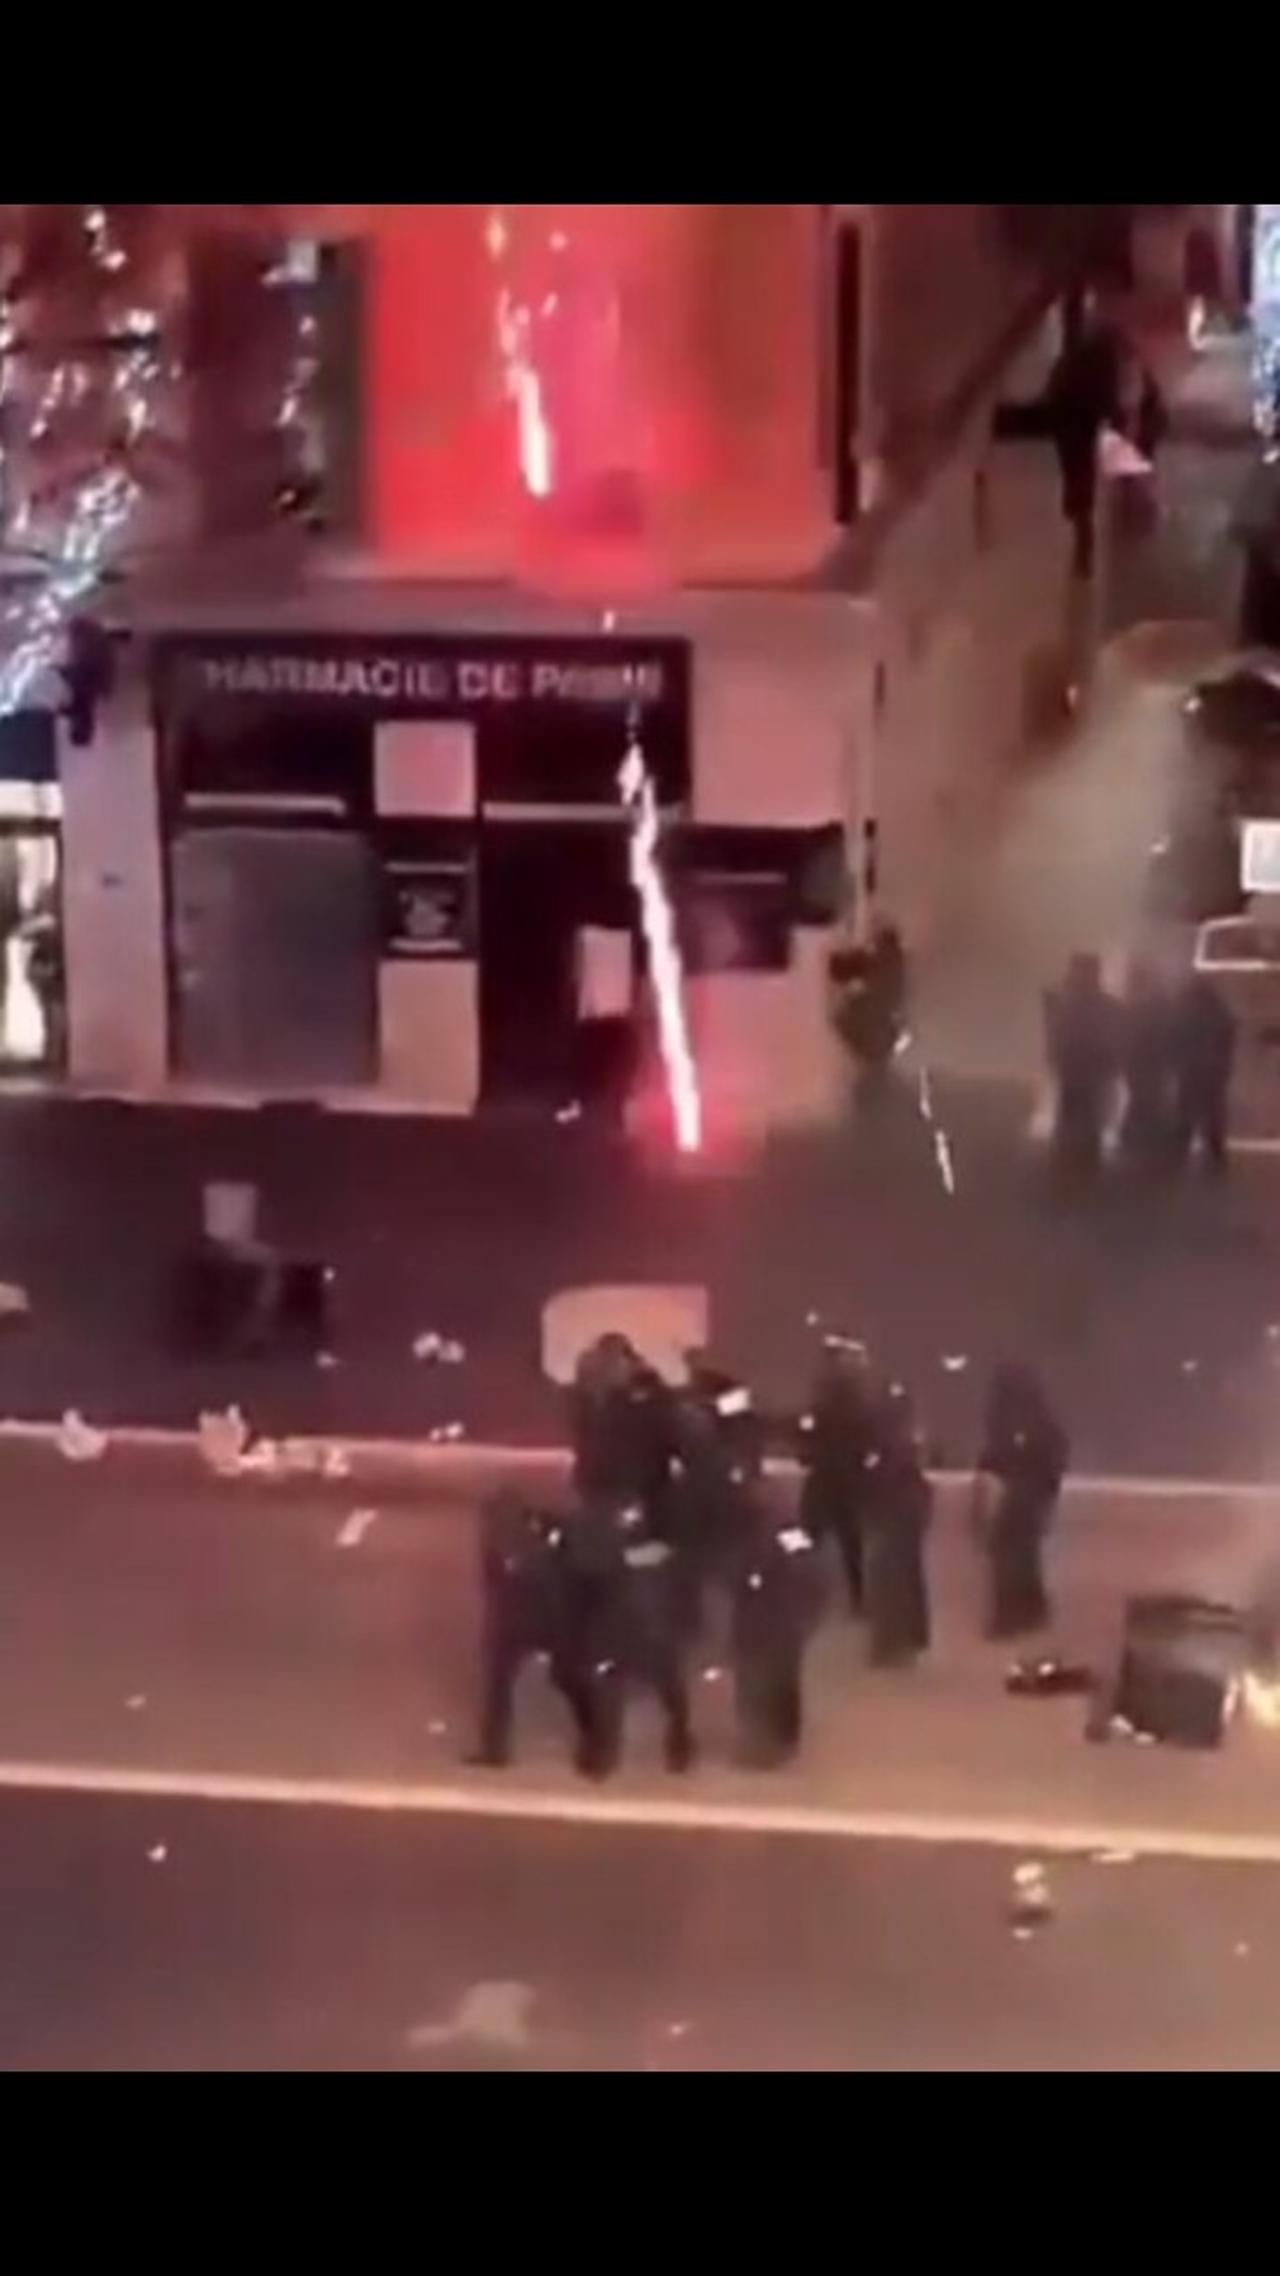 Riots erupted in Paris